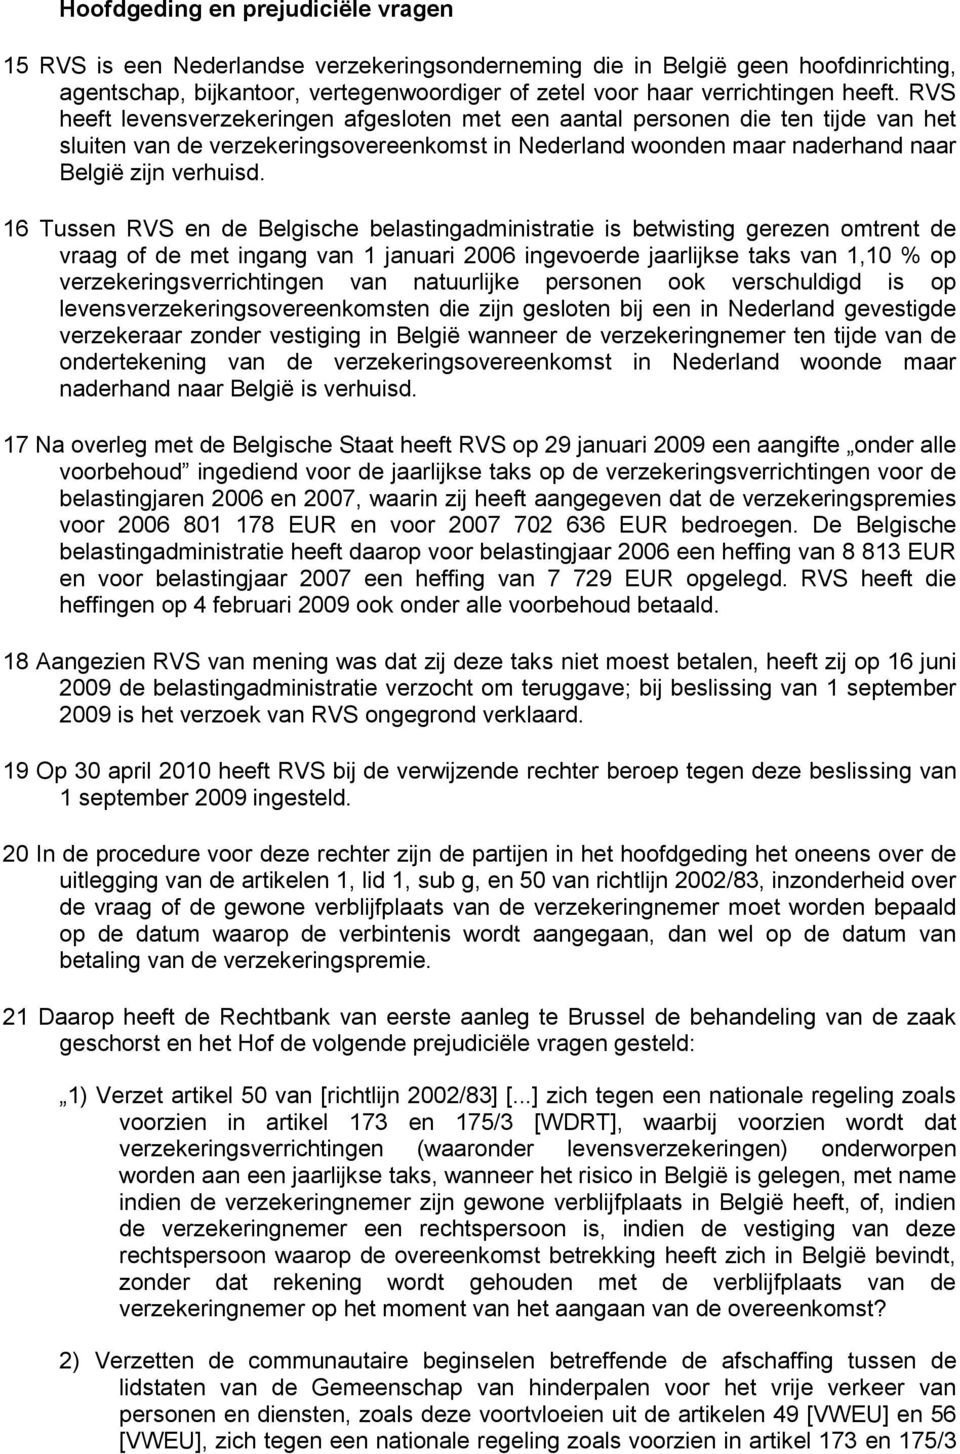 16 Tussen RVS en de Belgische belastingadministratie is betwisting gerezen omtrent de vraag of de met ingang van 1 januari 2006 ingevoerde jaarlijkse taks van 1,10 % op verzekeringsverrichtingen van